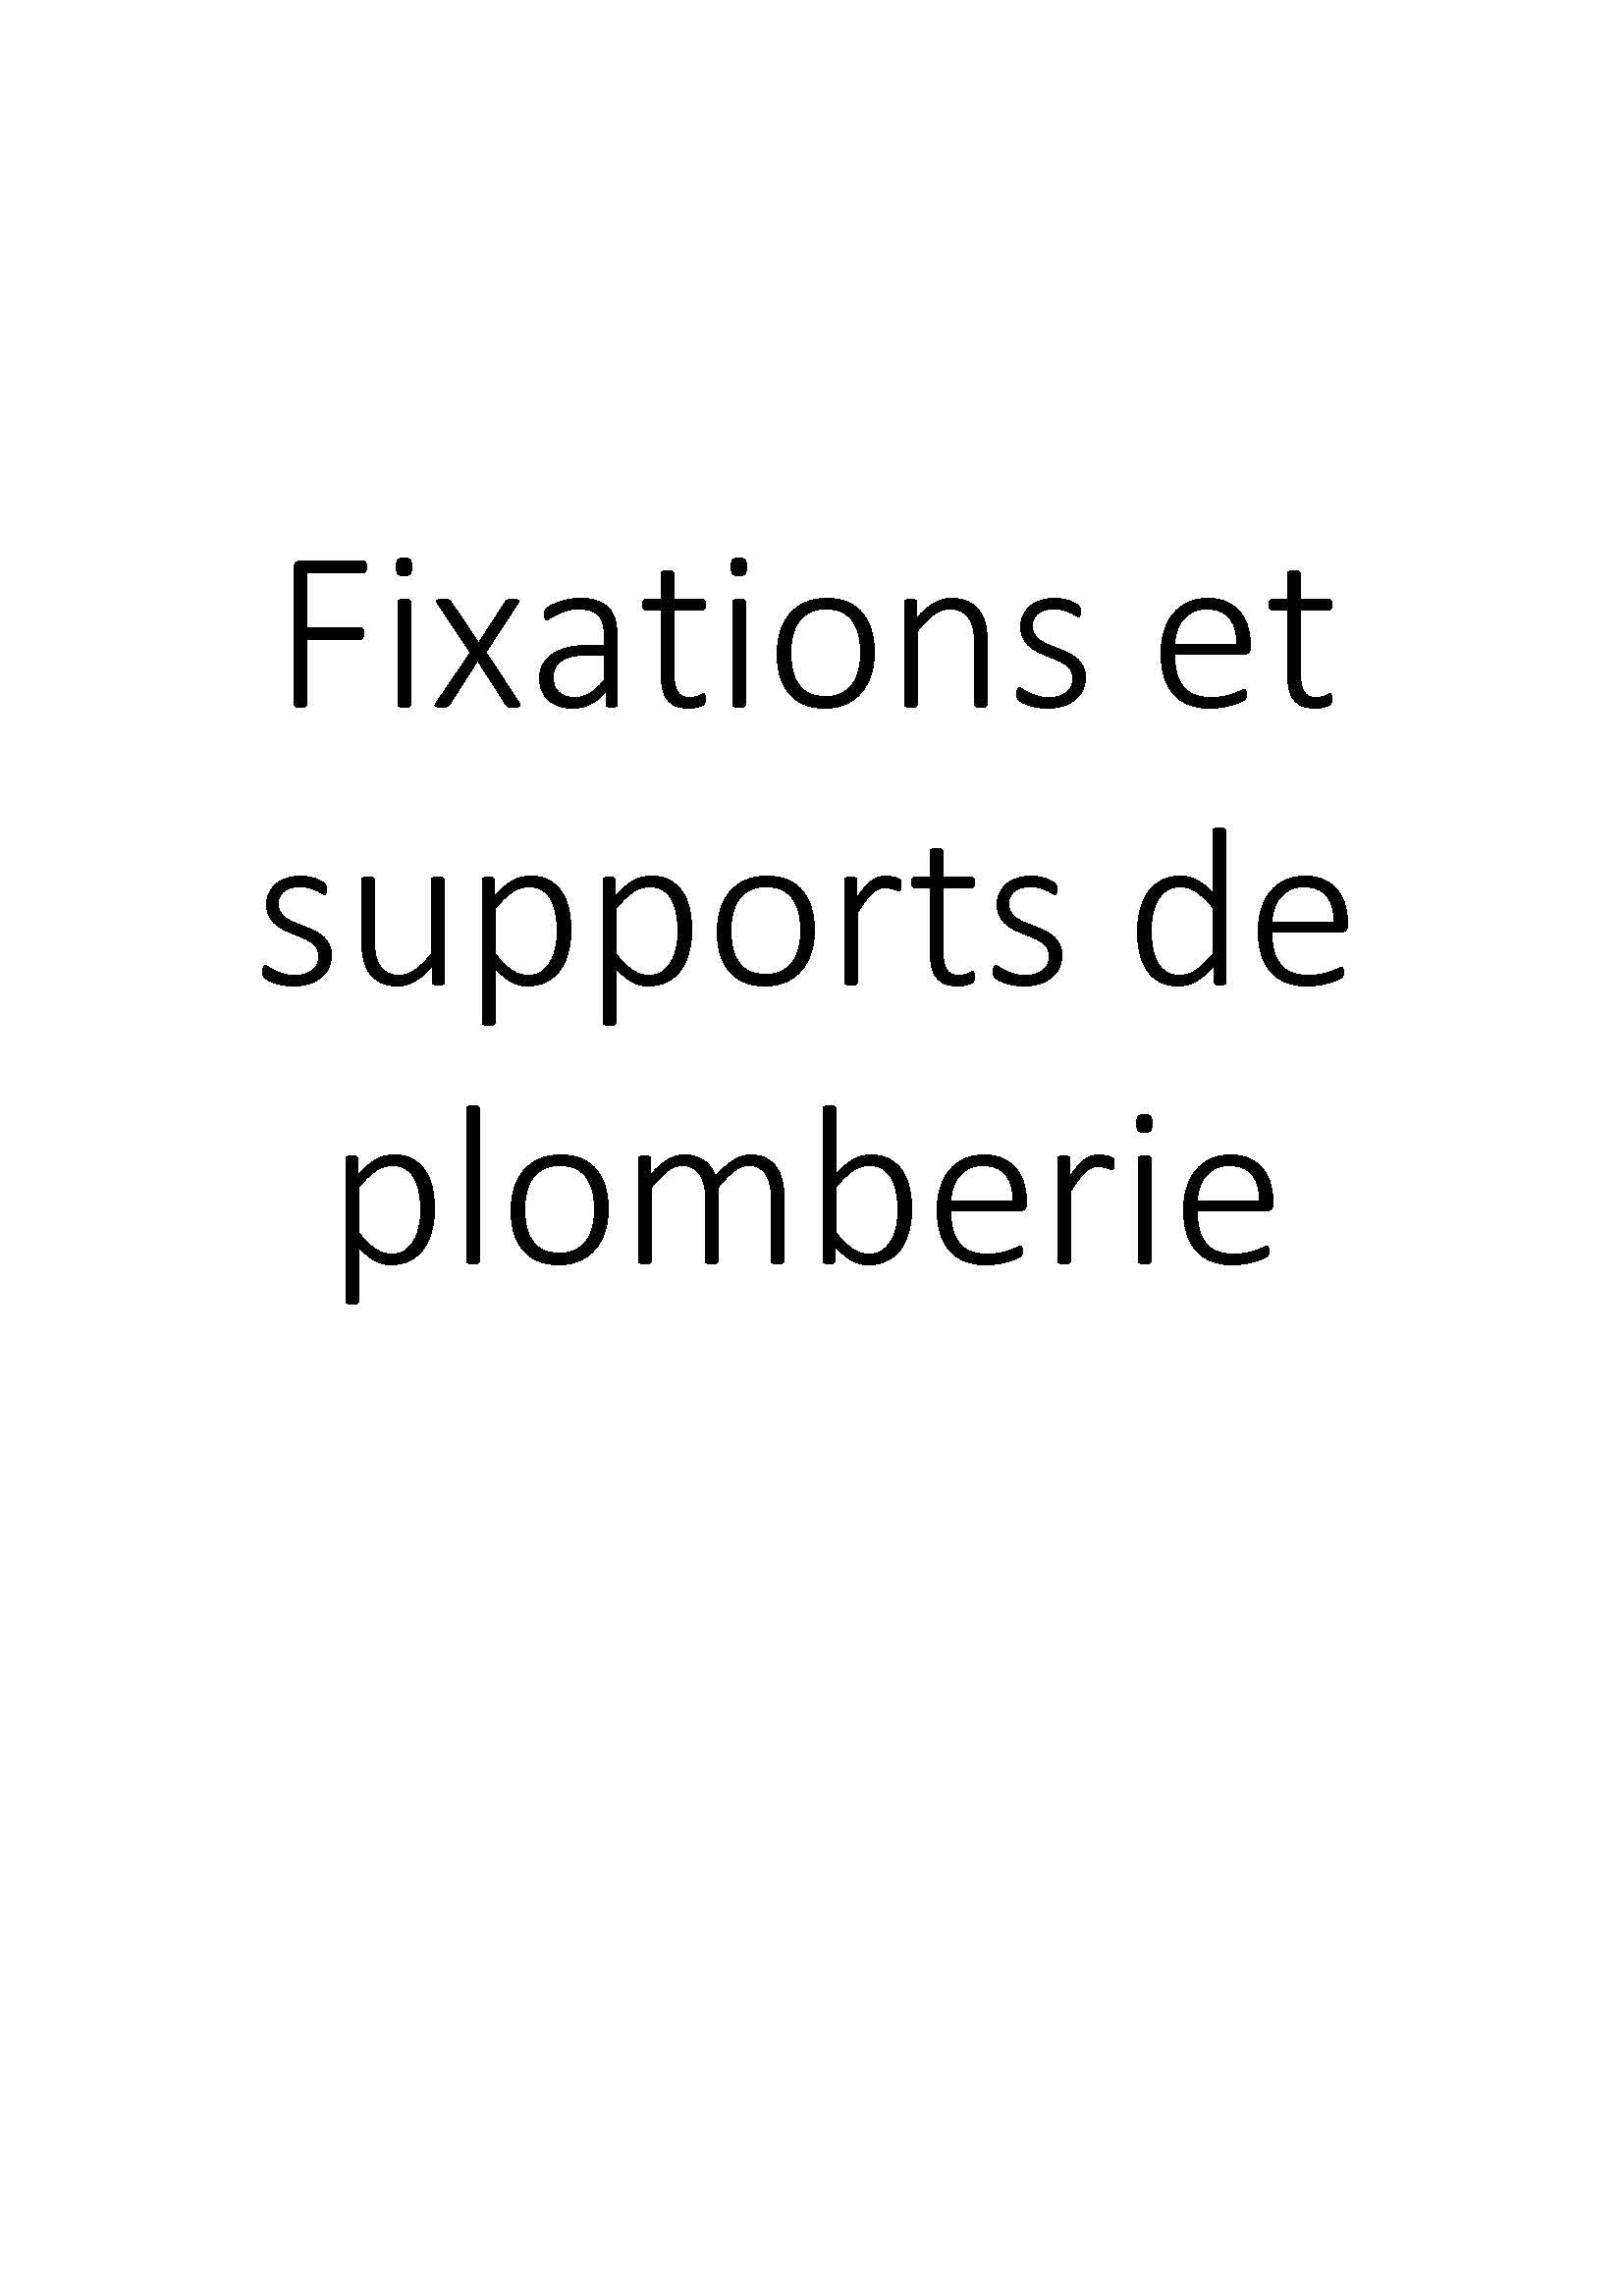 Fixations et supports de plomberie clicktofournisseur.com